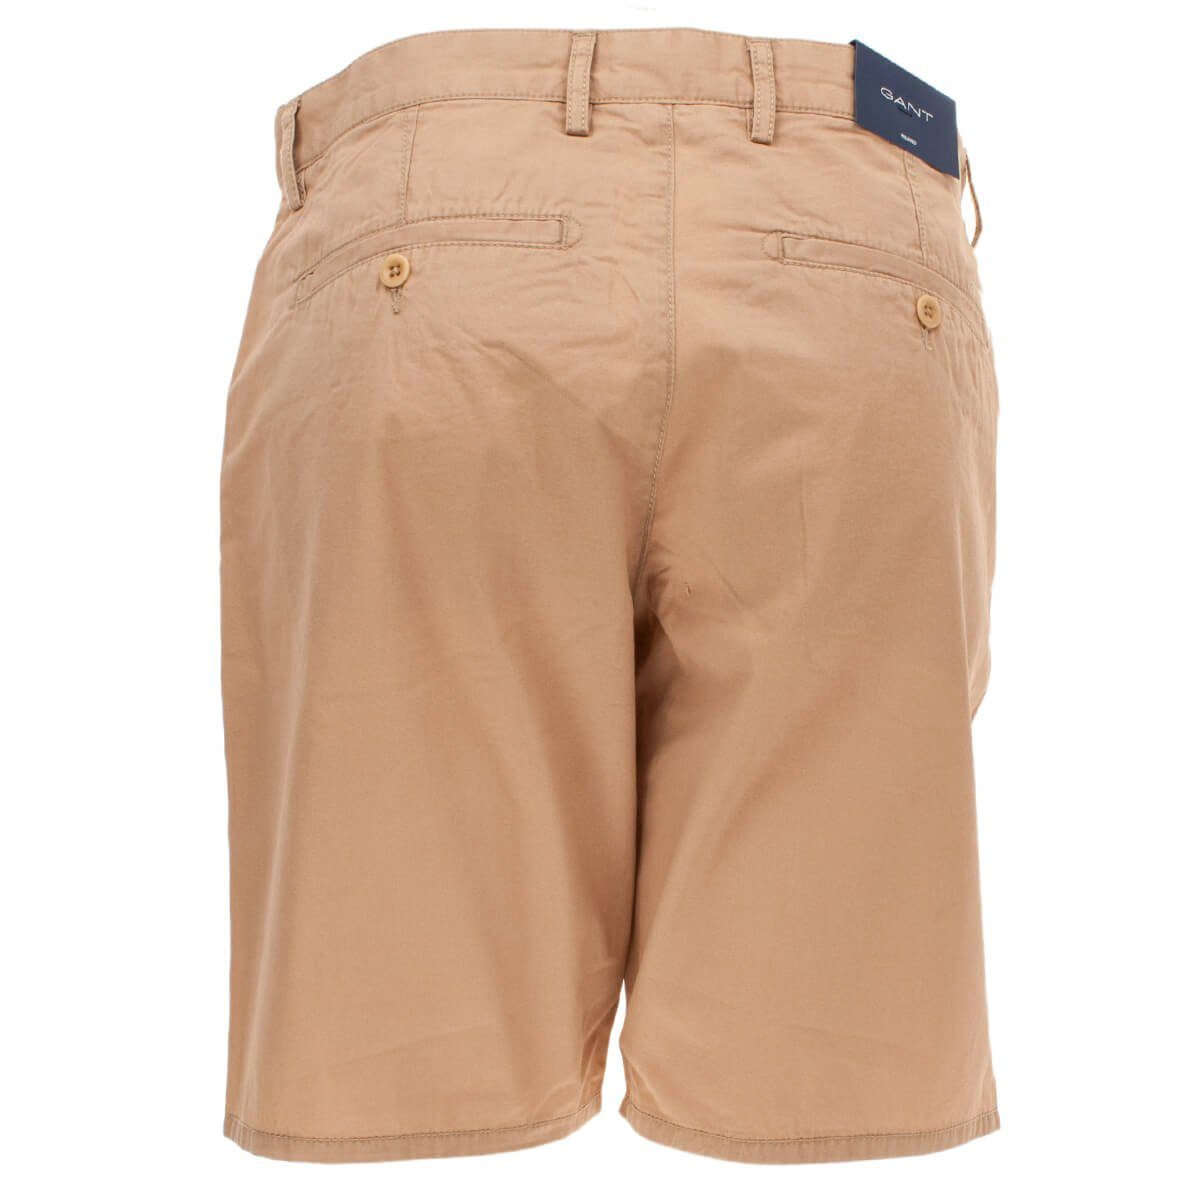 Gant Shorts 20011 Herren Beige(248) aus Summer Relaxed Baumwolle Shorts